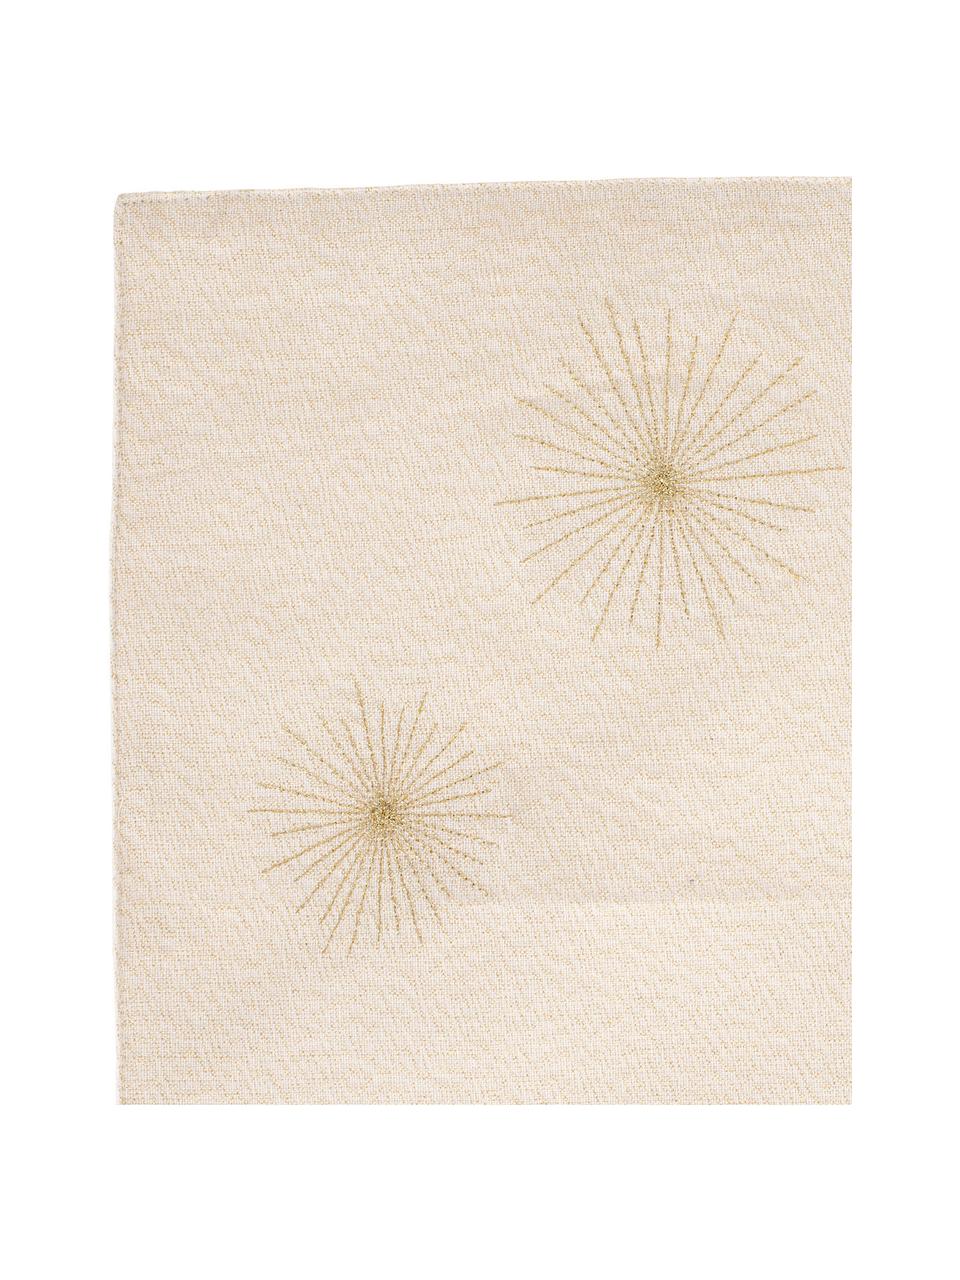 Podkładka z bawełny Aurum, 2 szt., Bawełna, Odcienie kremowego, odcienie złotego, S 50 x D 38 cm